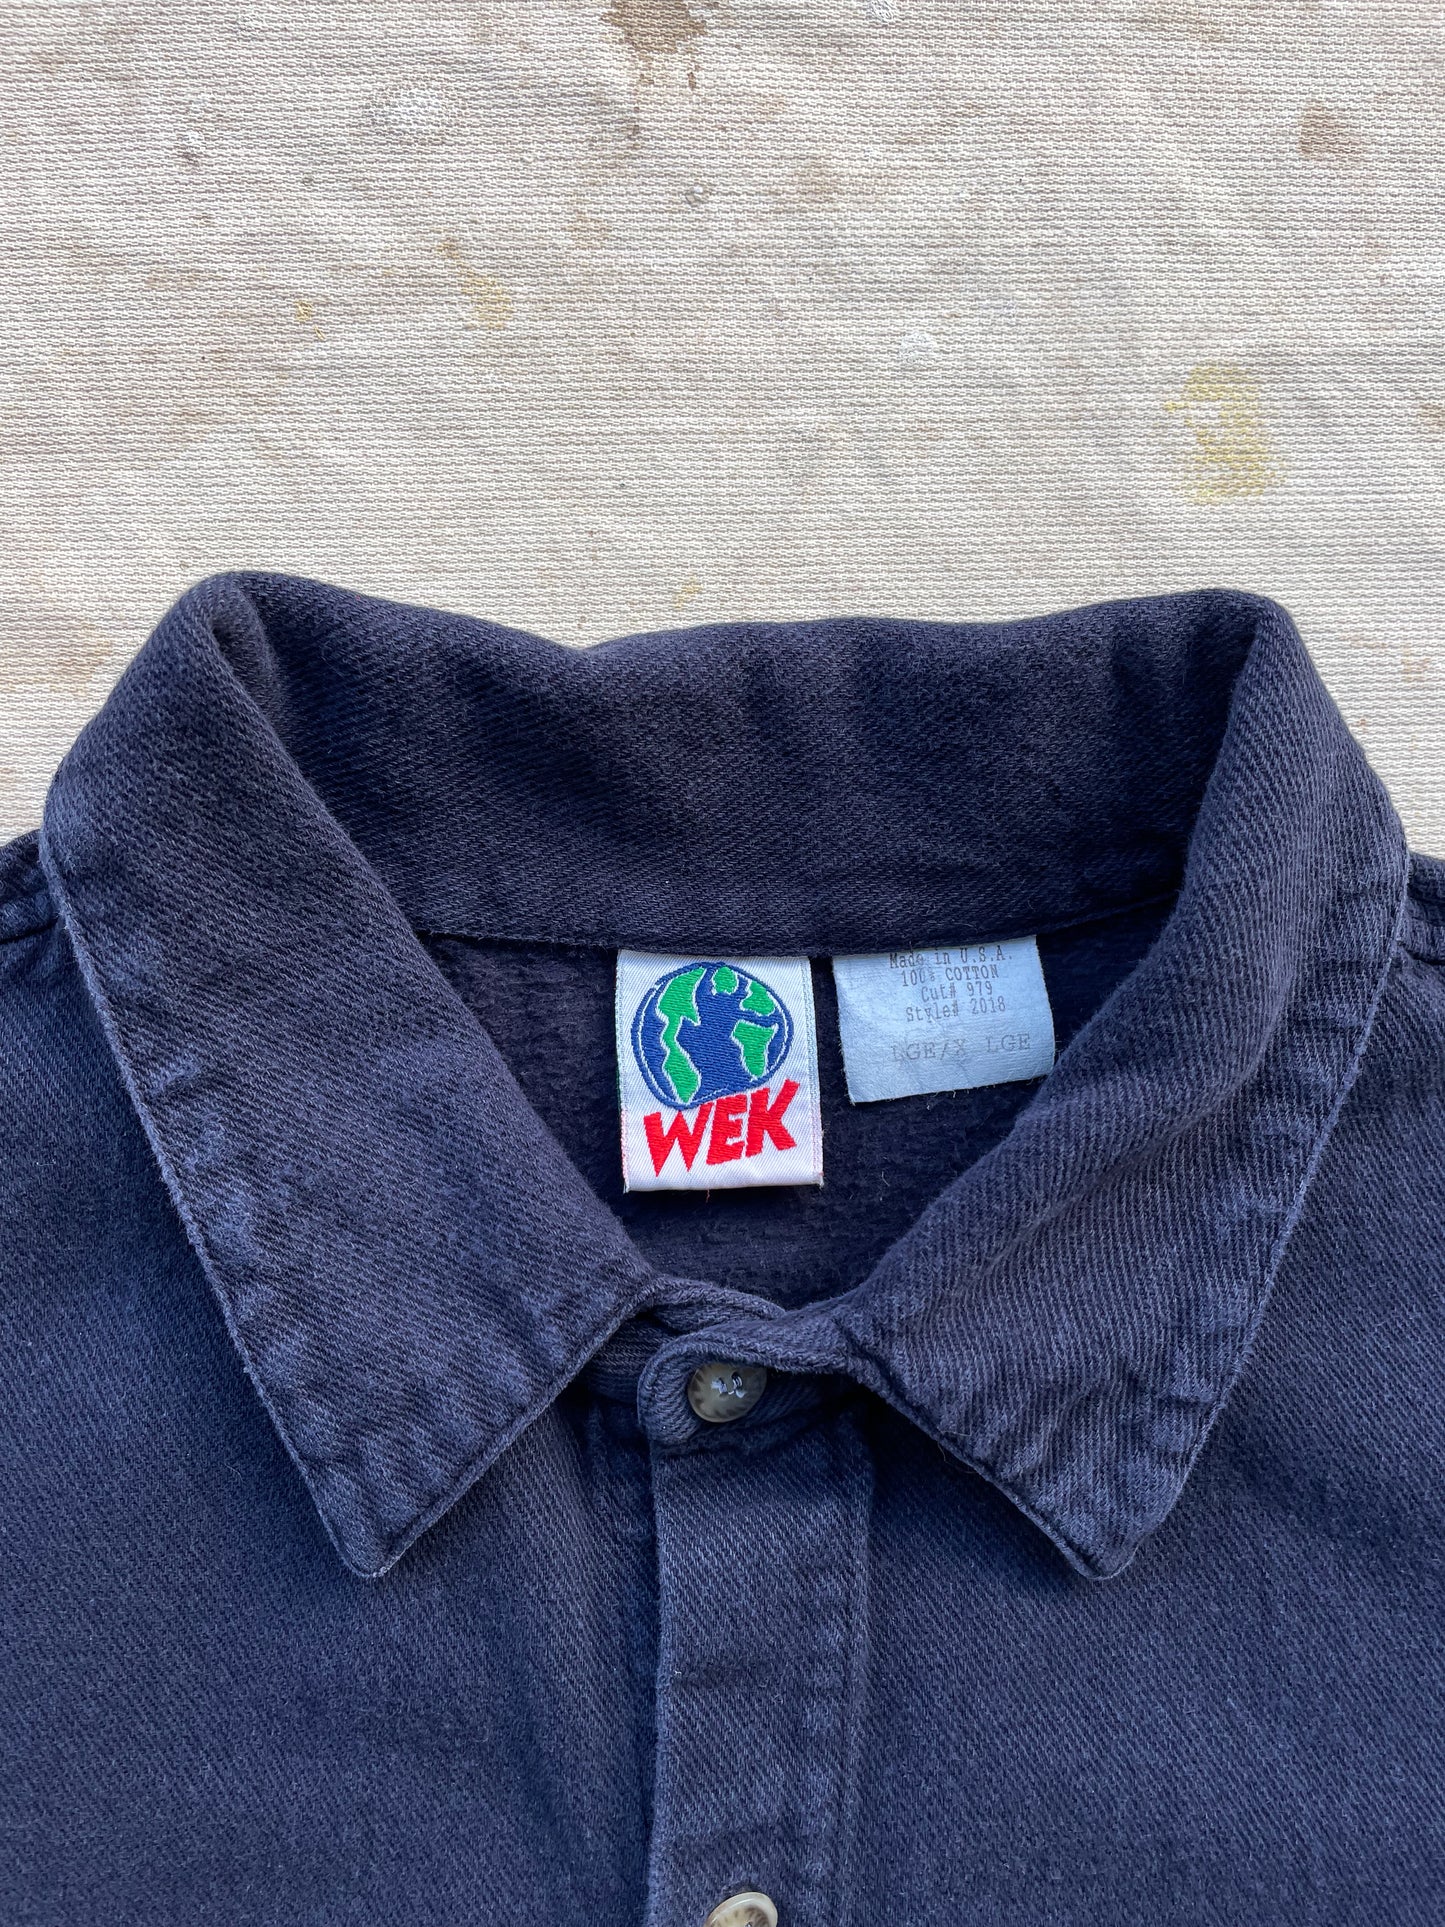 WEK Heavyweight Shirt—[L/XL]